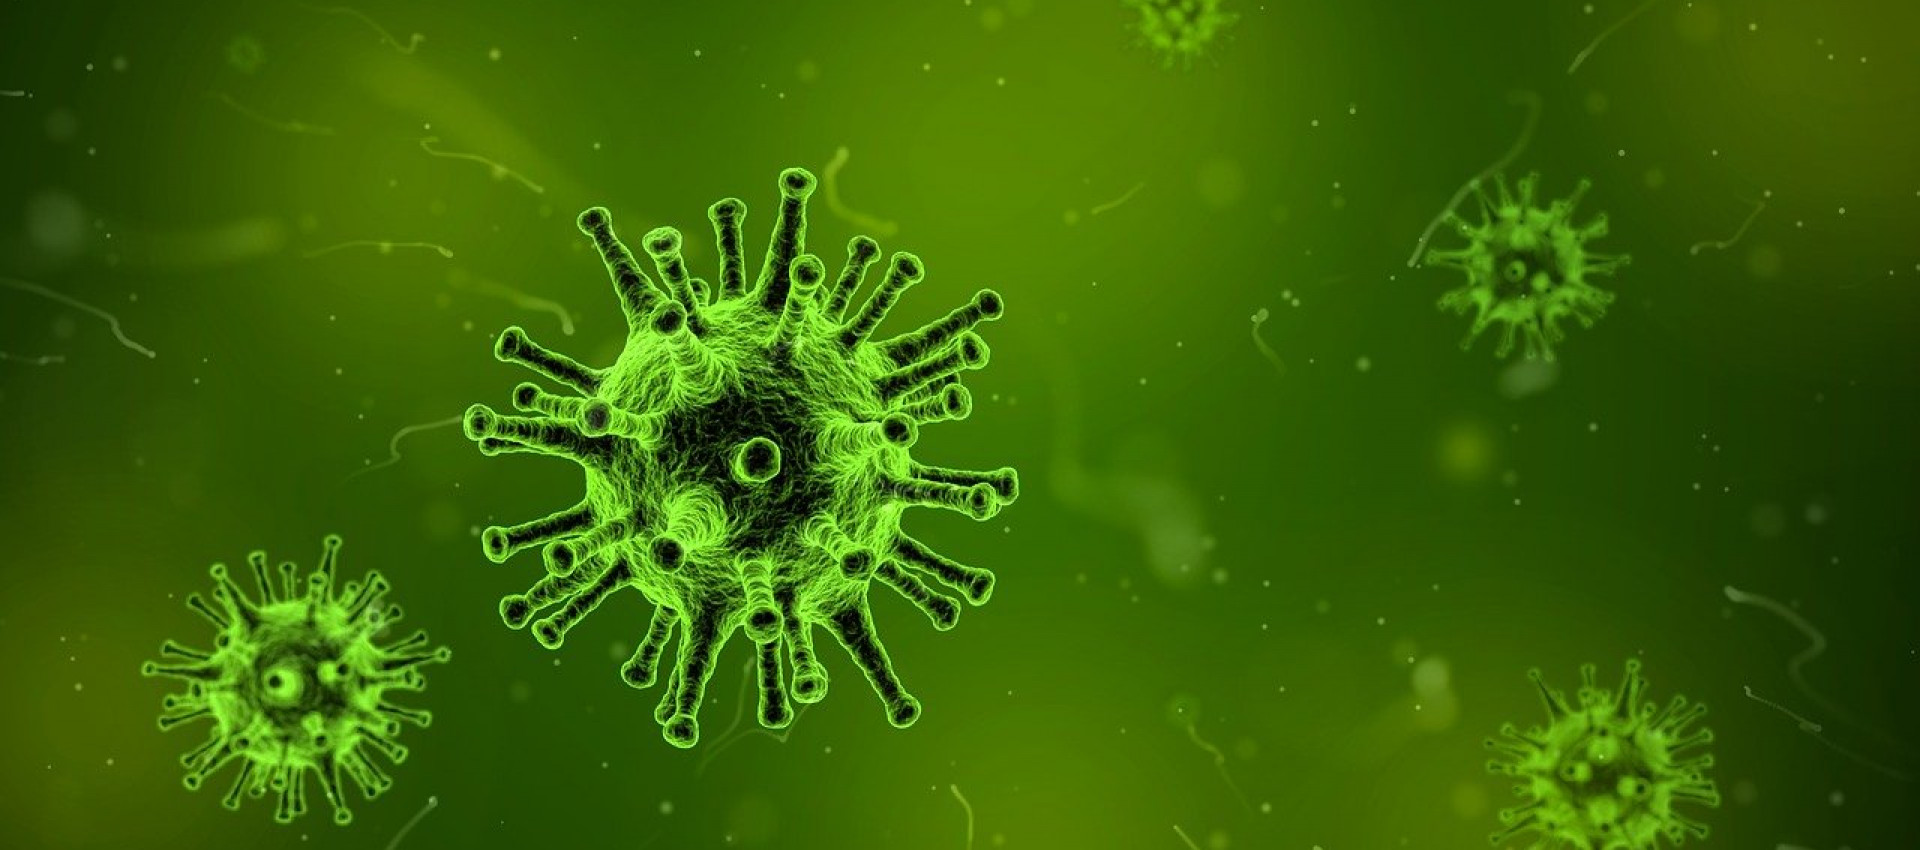 Corona-Virus - wichtigste Informationen für Sie zusammengestellt!